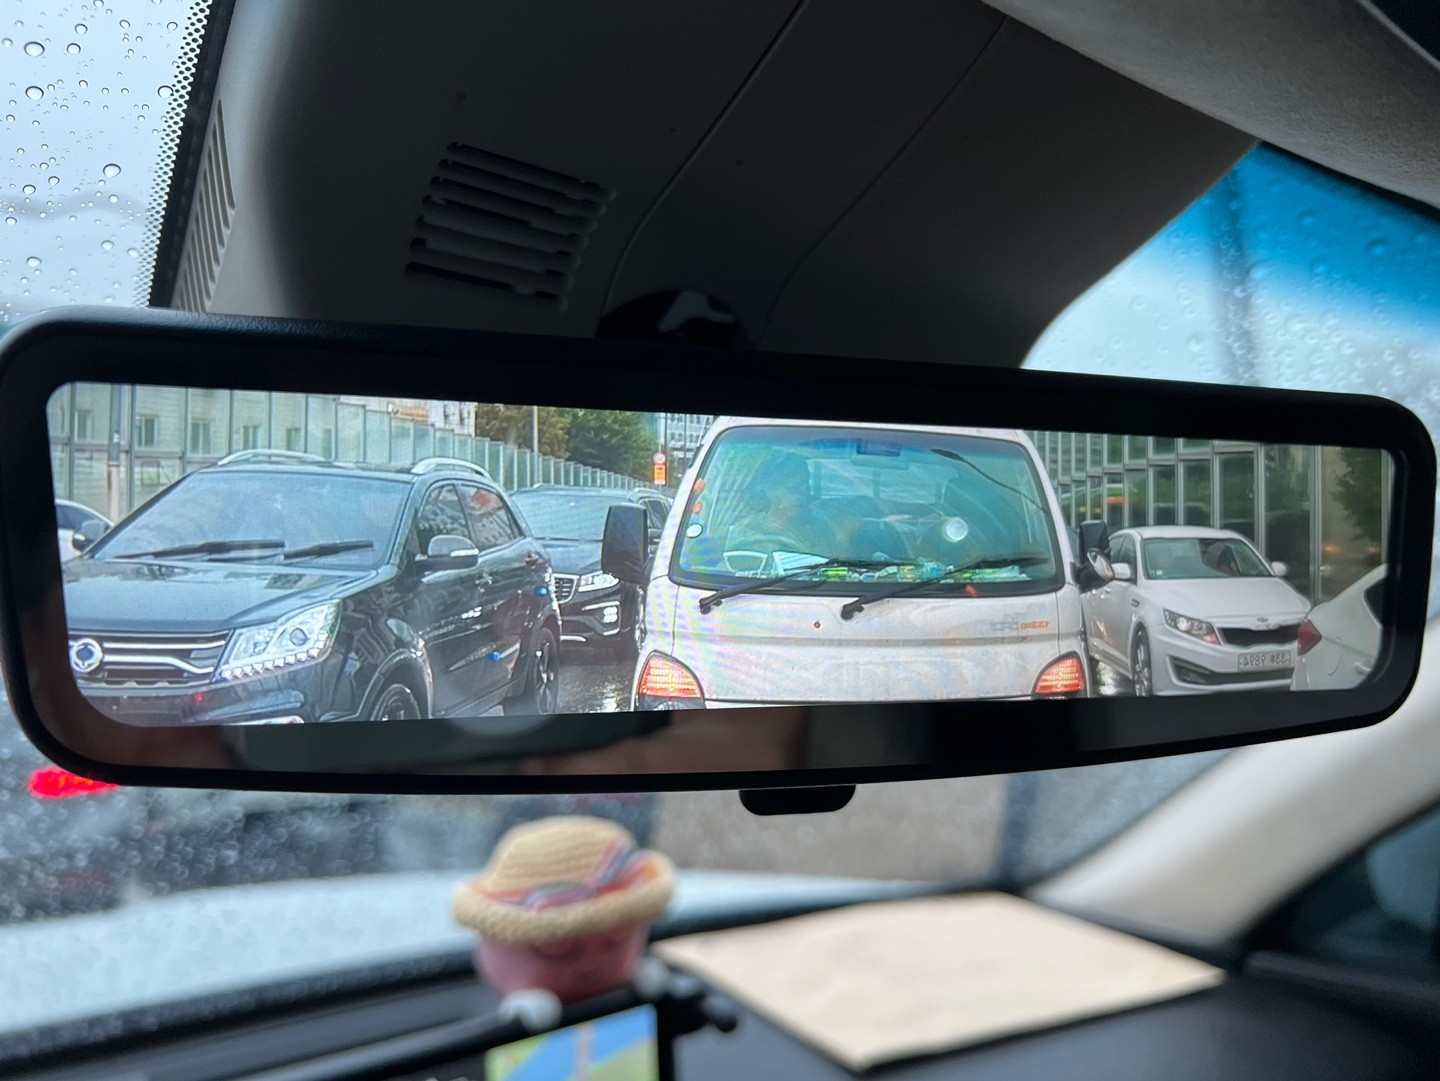 자동차 미러, 거울, 백미러, 자동차이(가) 표시된 사진

자동 생성된 설명